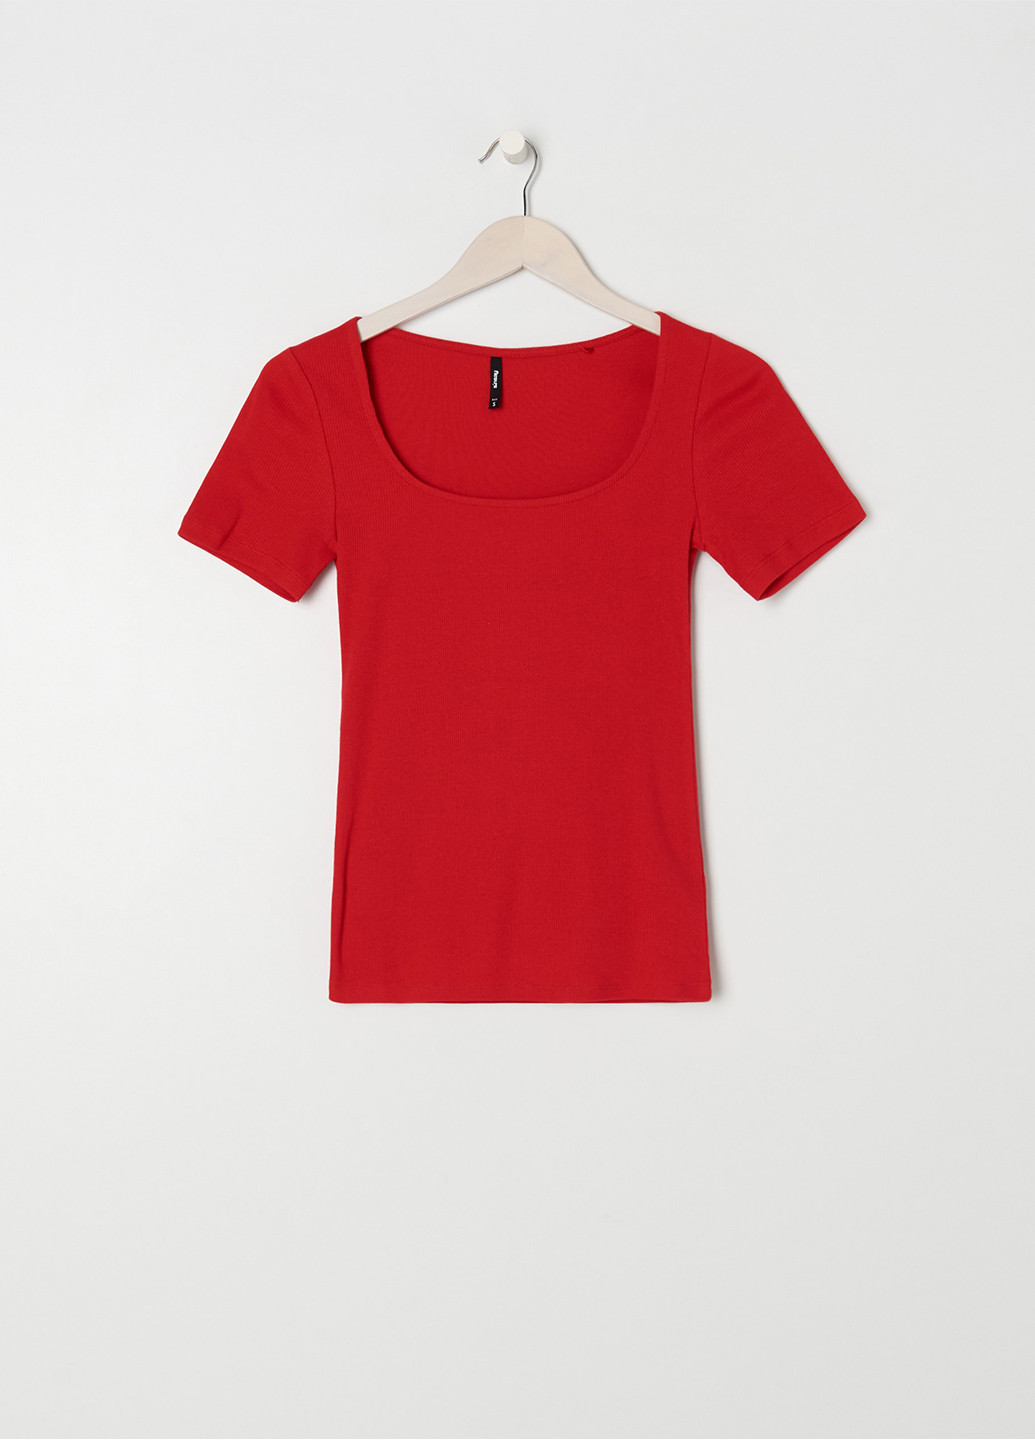 Красная летняя футболка Sinsay